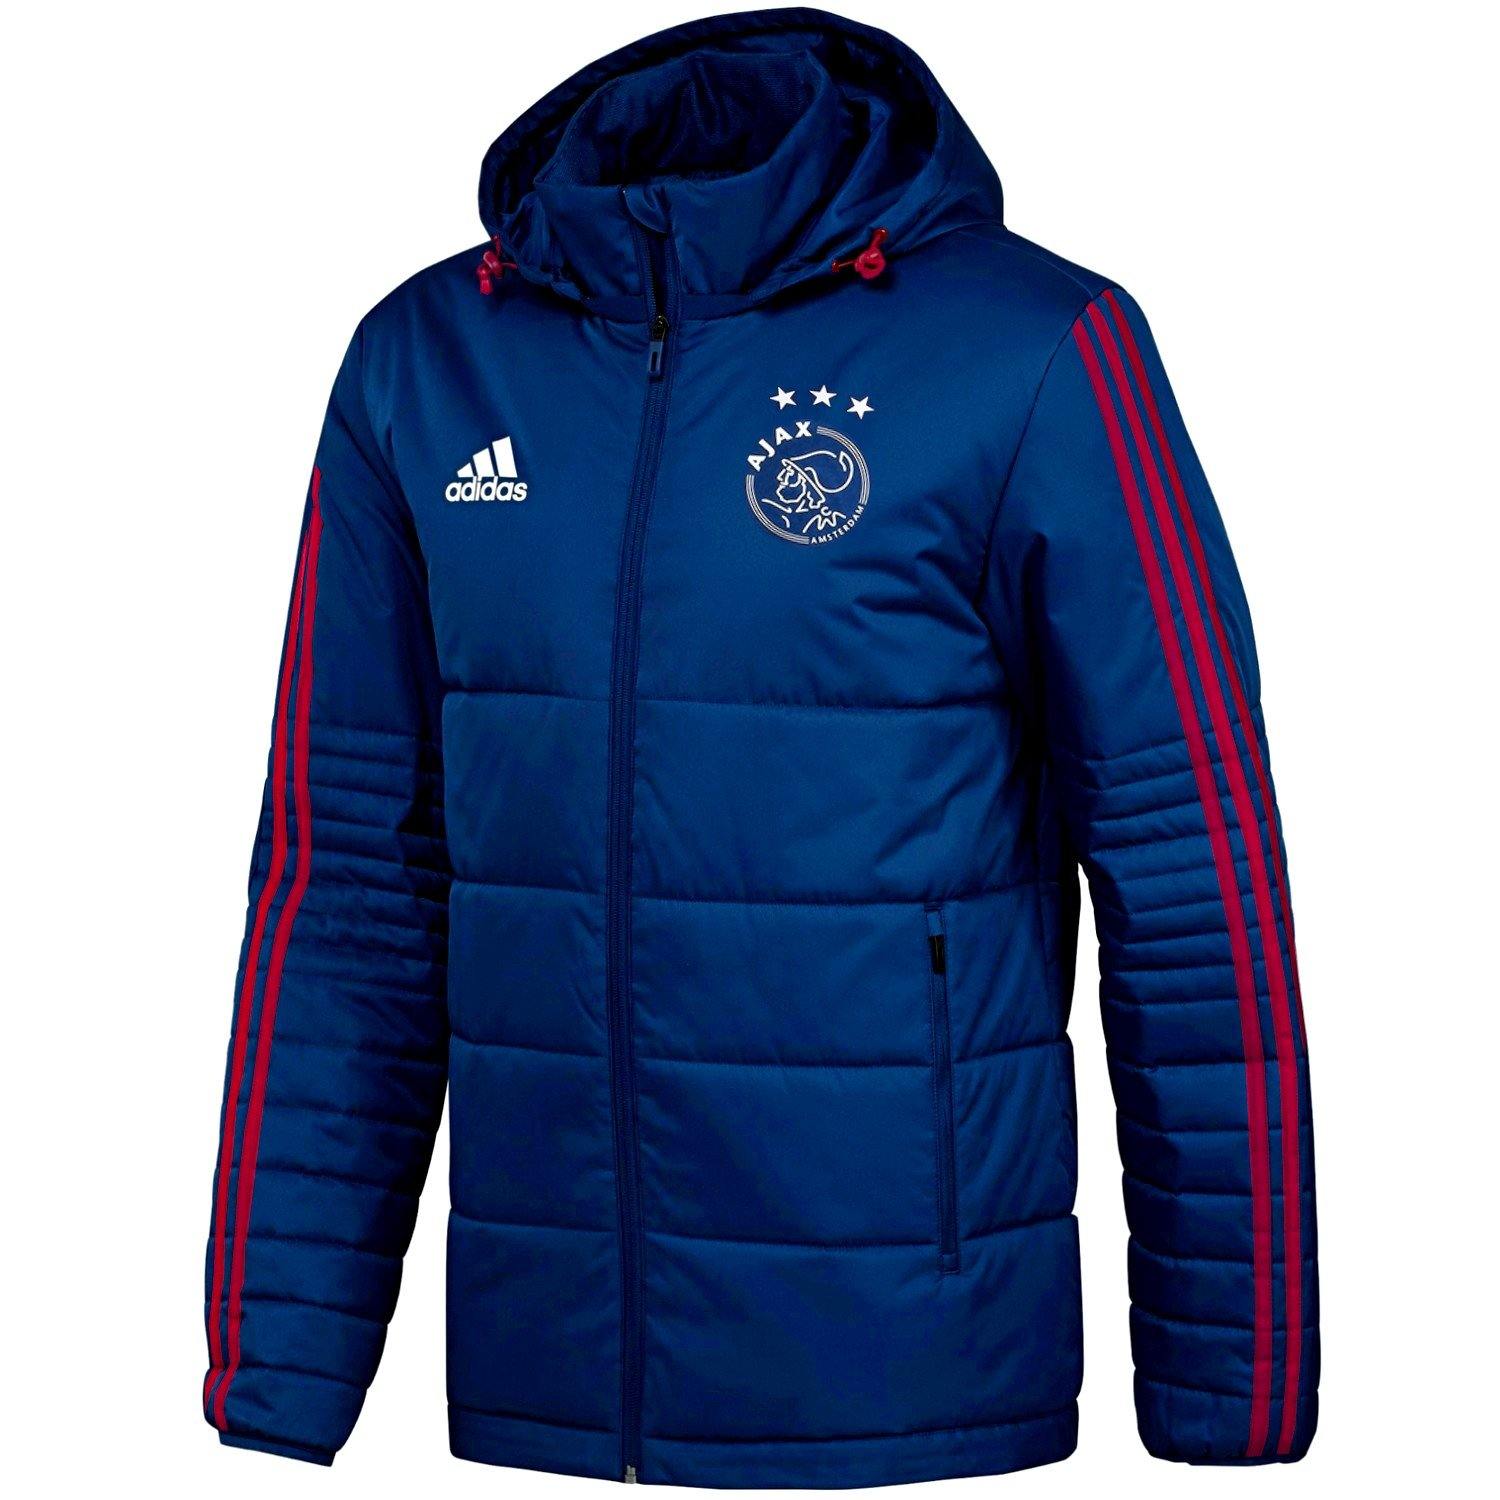 verrassing Ver weg Geduld Ajax winter training bench soccer jacket 2018 - Adidas –  SoccerTracksuits.com